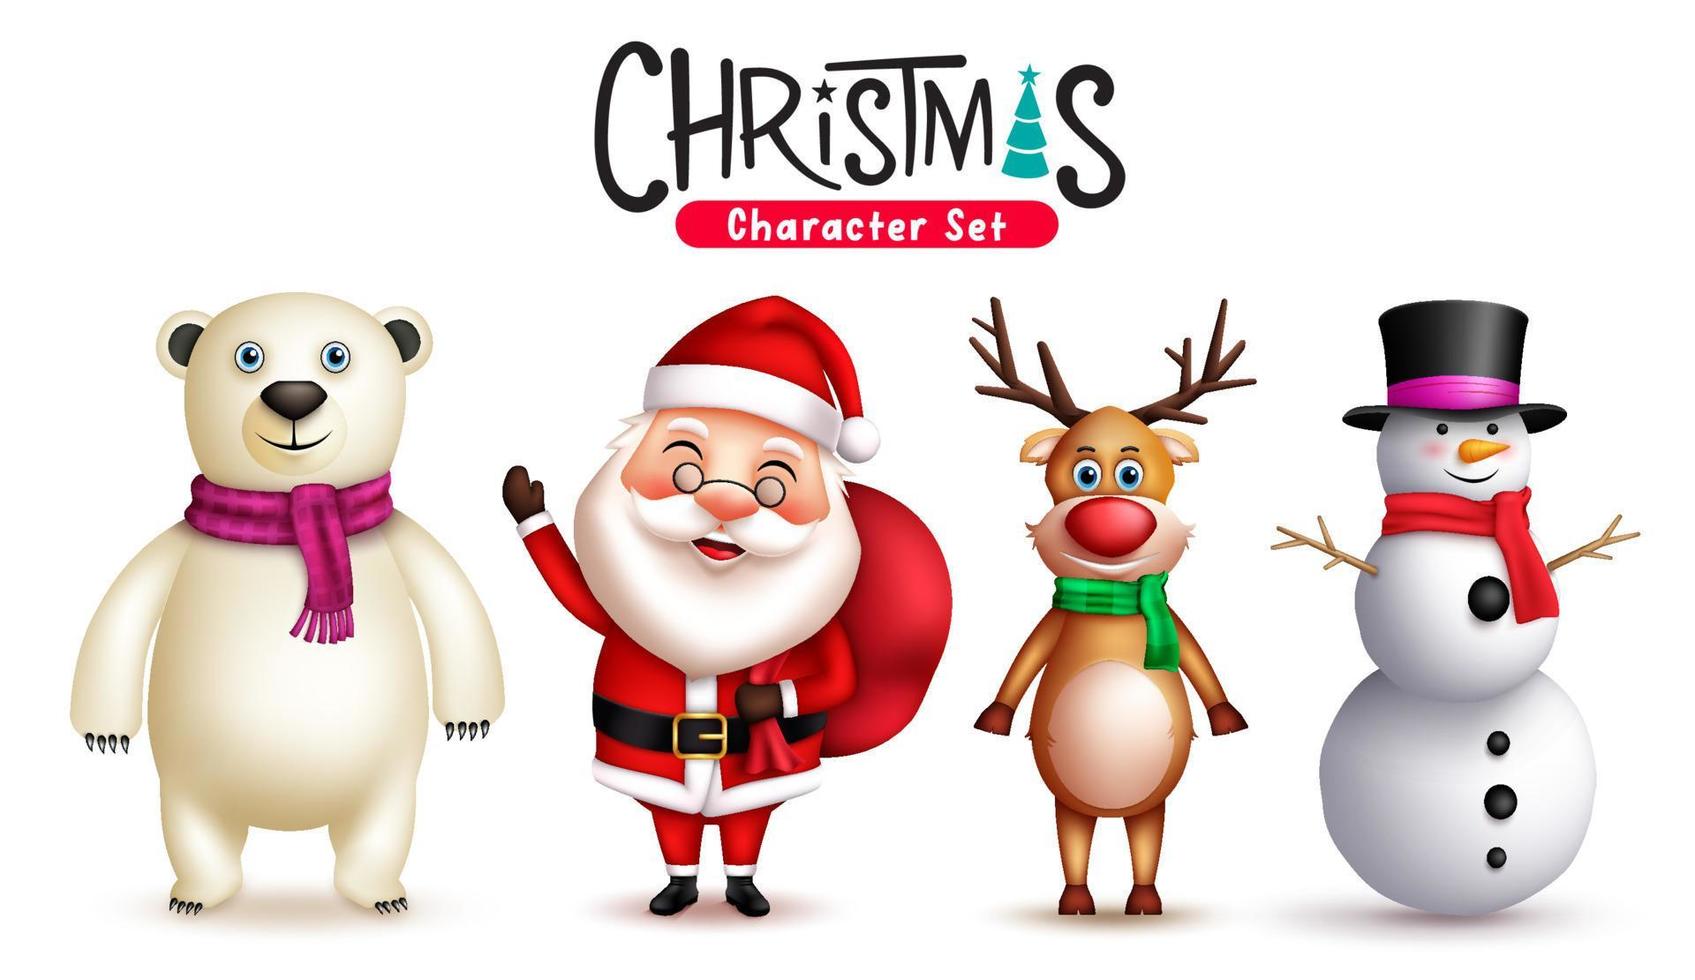 kerst tekens vector set. 3D-kerstkarakter van de kerstman met sneeuwpop, rendier en ijsbeer voor ontwerpcollectie voor kerstvriendelijke gezichtsuitdrukkingen. vector illustratie